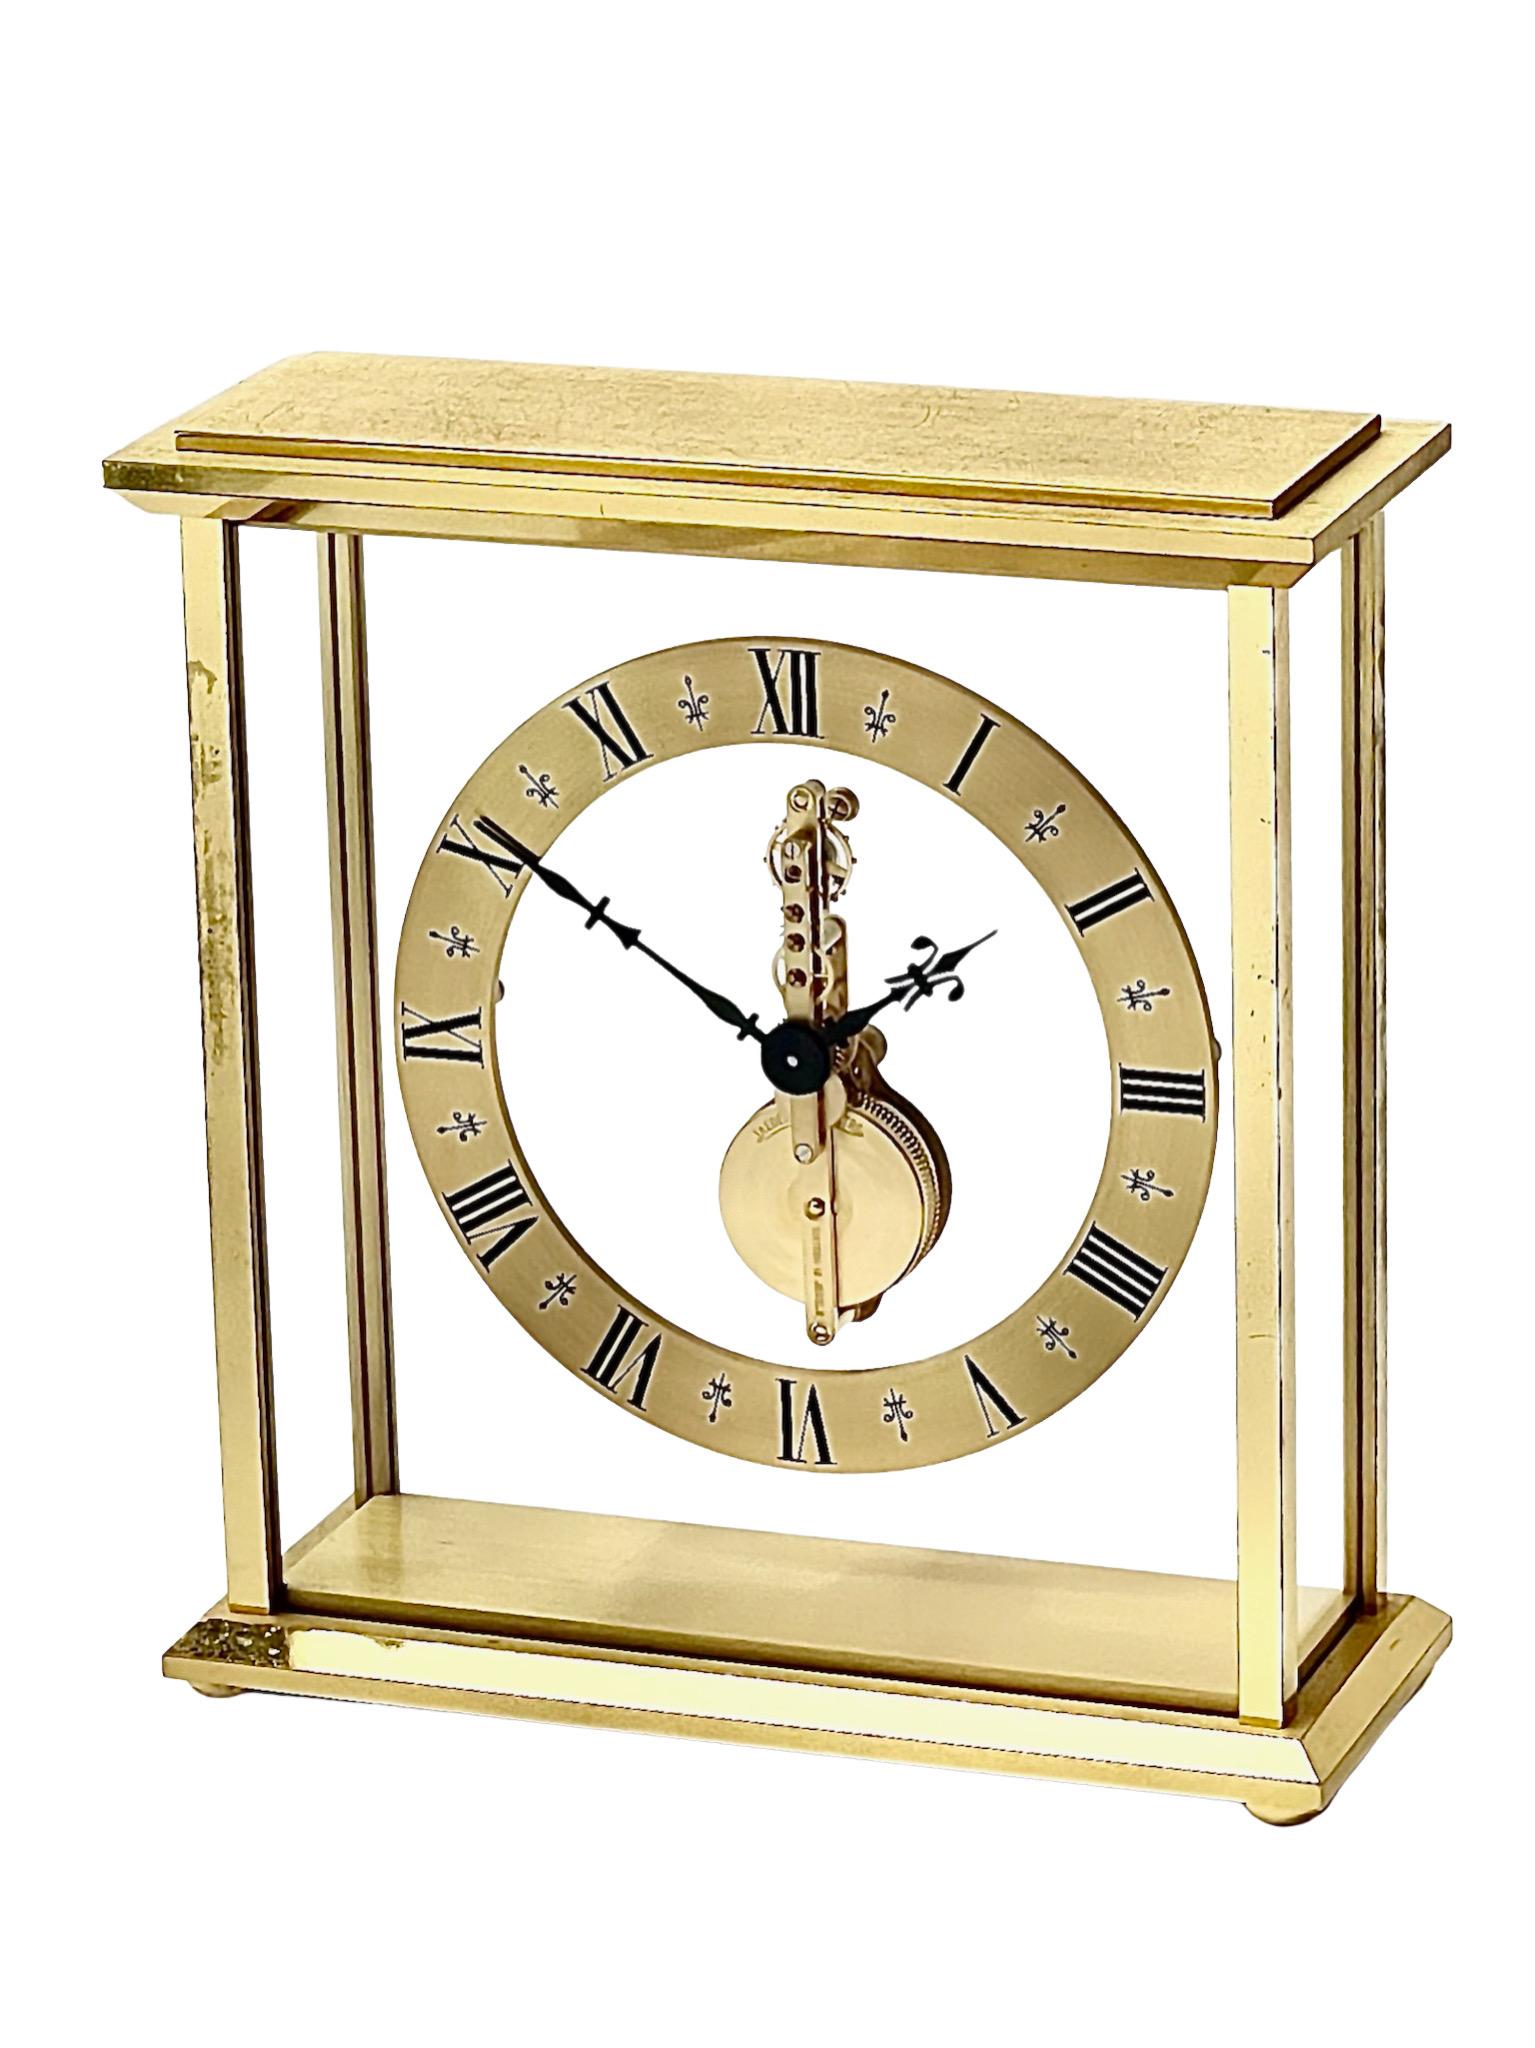 Une belle horloge de cheminée en laiton et verre de Jaeger-LeCoultre, avec un mouvement flottant Baguette dans un boîtier rectangulaire en verre et laiton poli. Le boîtier en laiton doré présente des bords biseautés élégants et la dorure d'origine